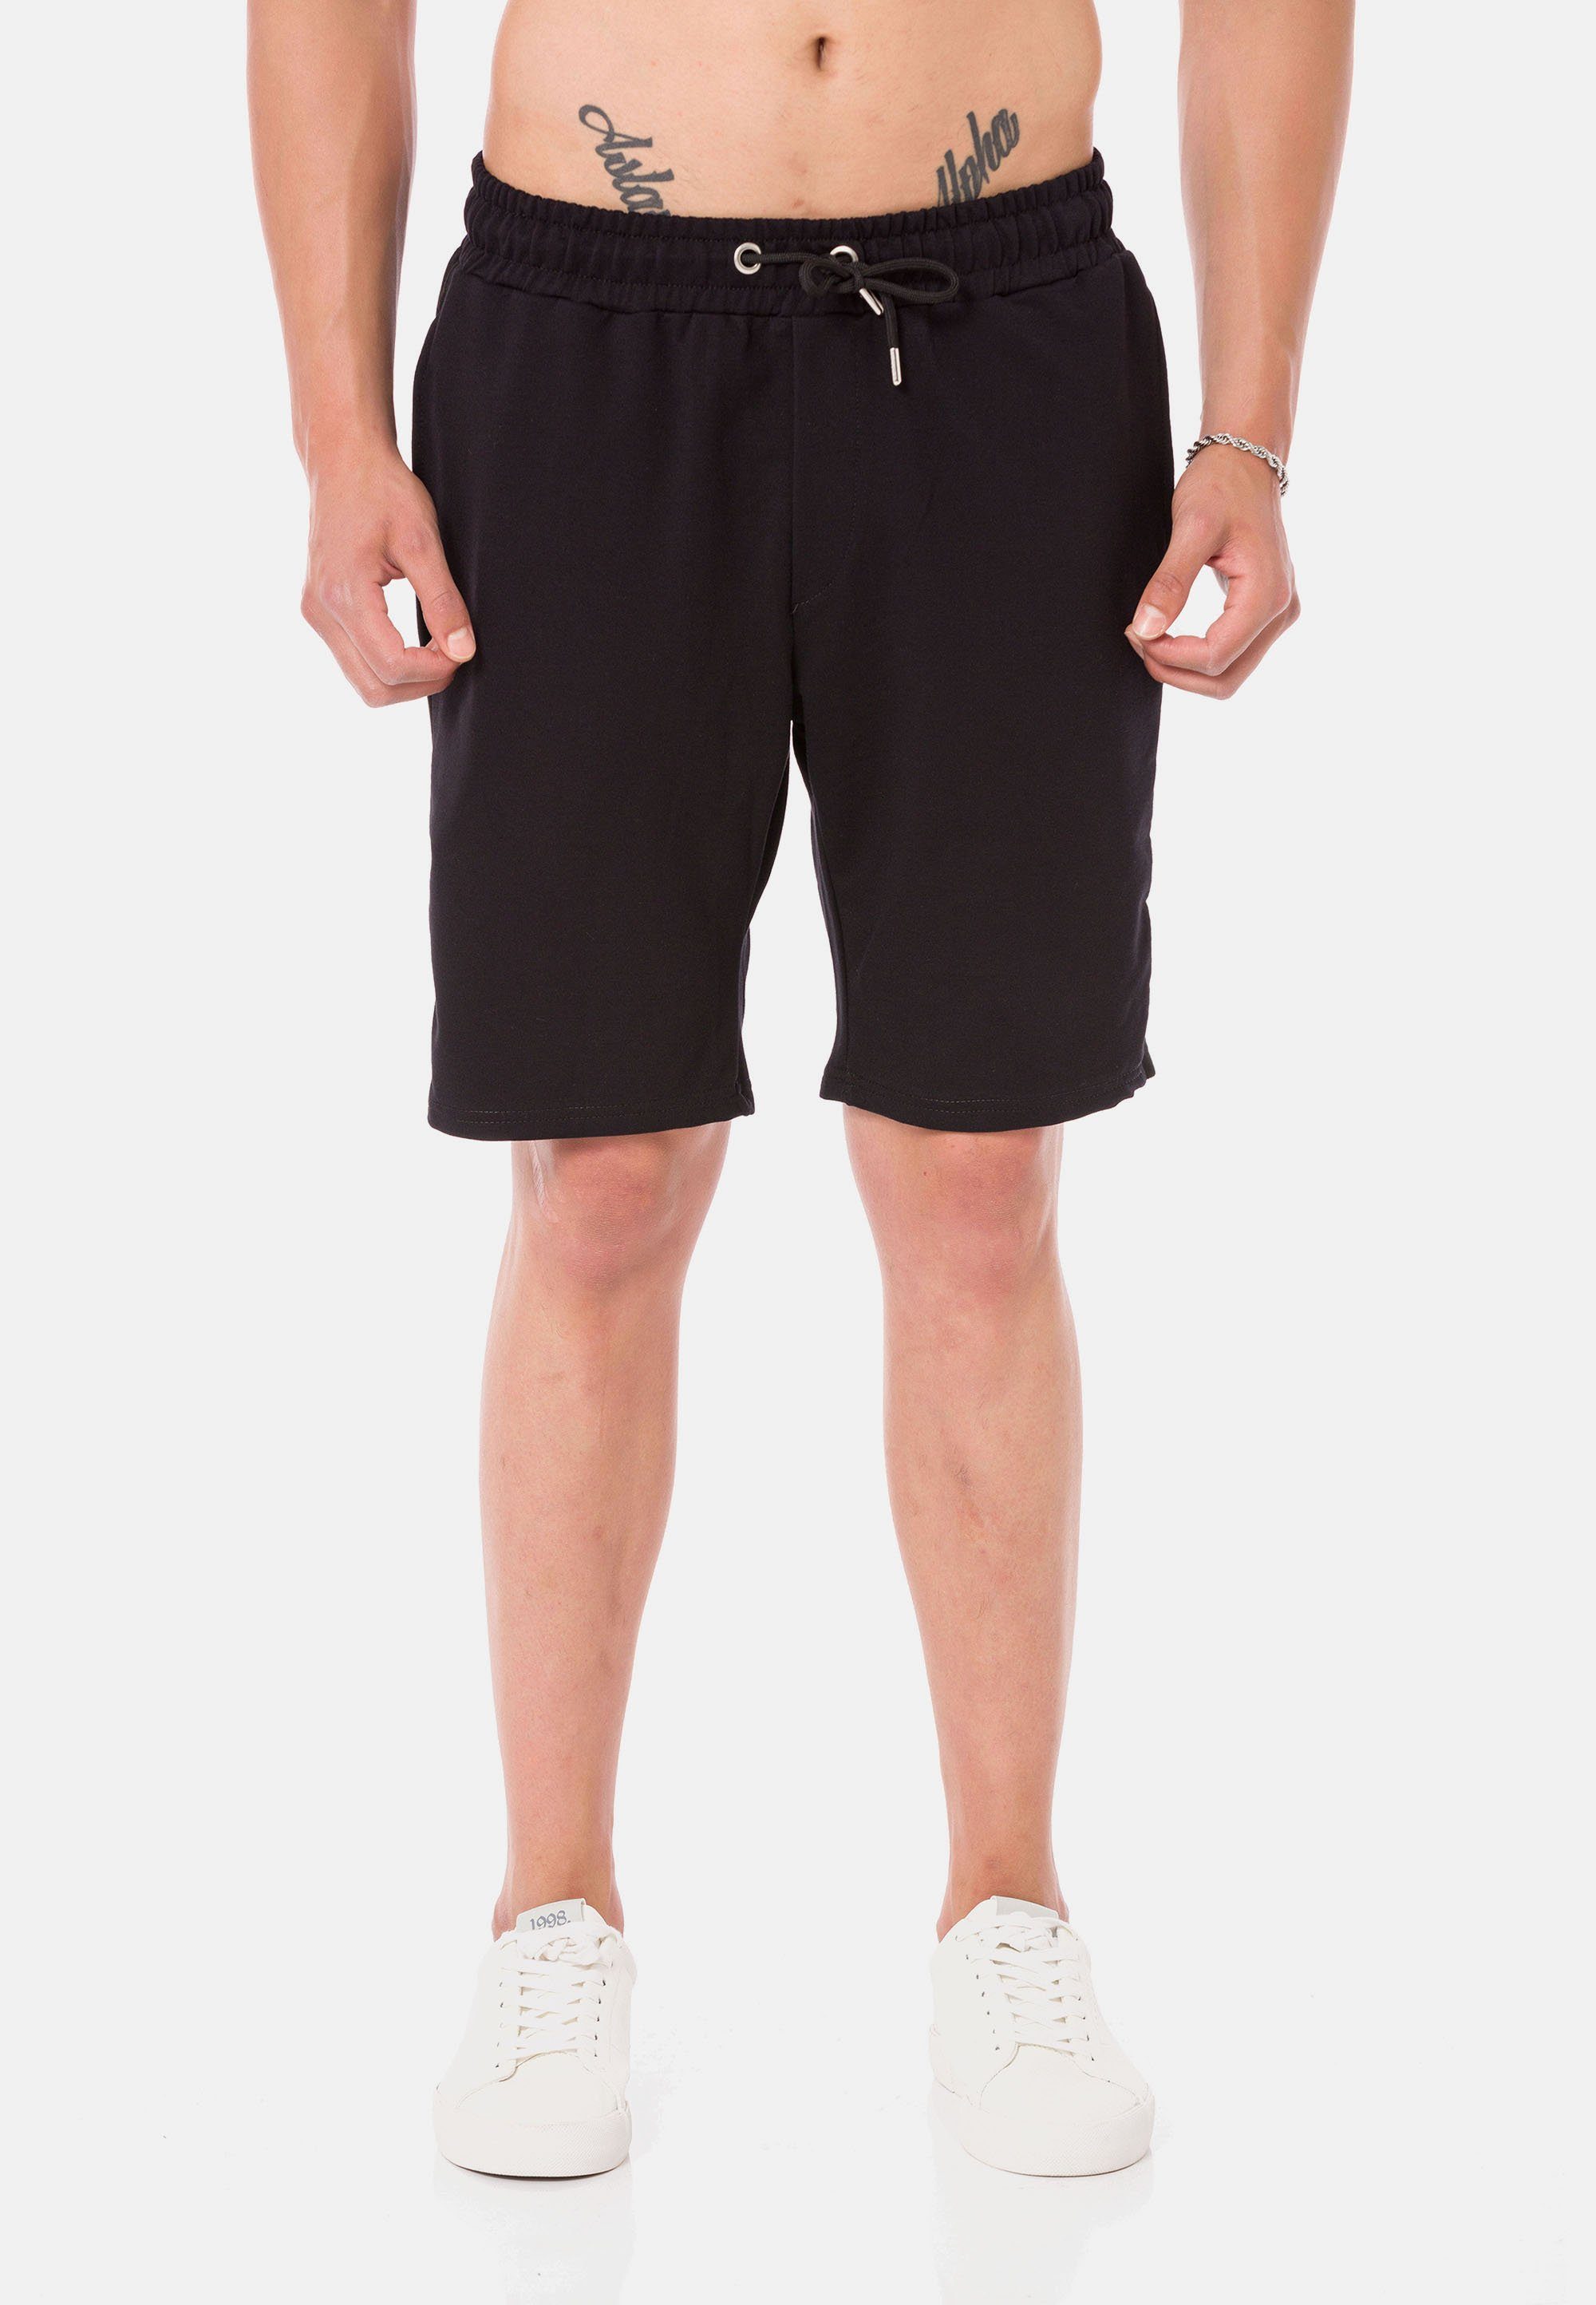 RedBridge Shorts Weymouth im dezenten, sportlichen Design schwarz